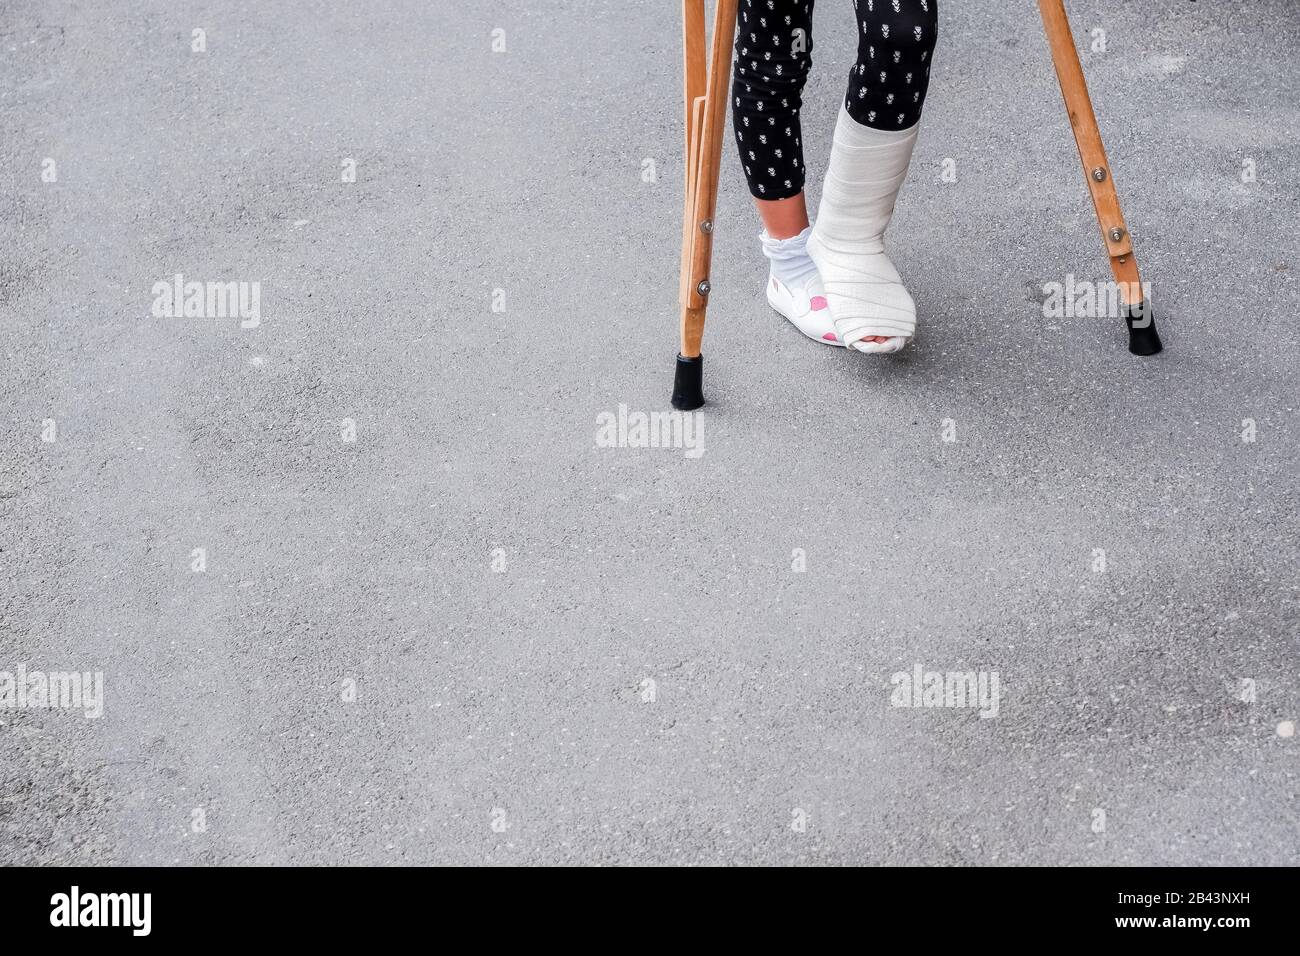 Enfant utilisant des béquilles et des jambes cassées pour marcher à l'extérieur, gros plan. Jambe cassée, béquilles en bois, blessure à la cheville. Fracture osseuse et fracture de la cheville BEI Banque D'Images